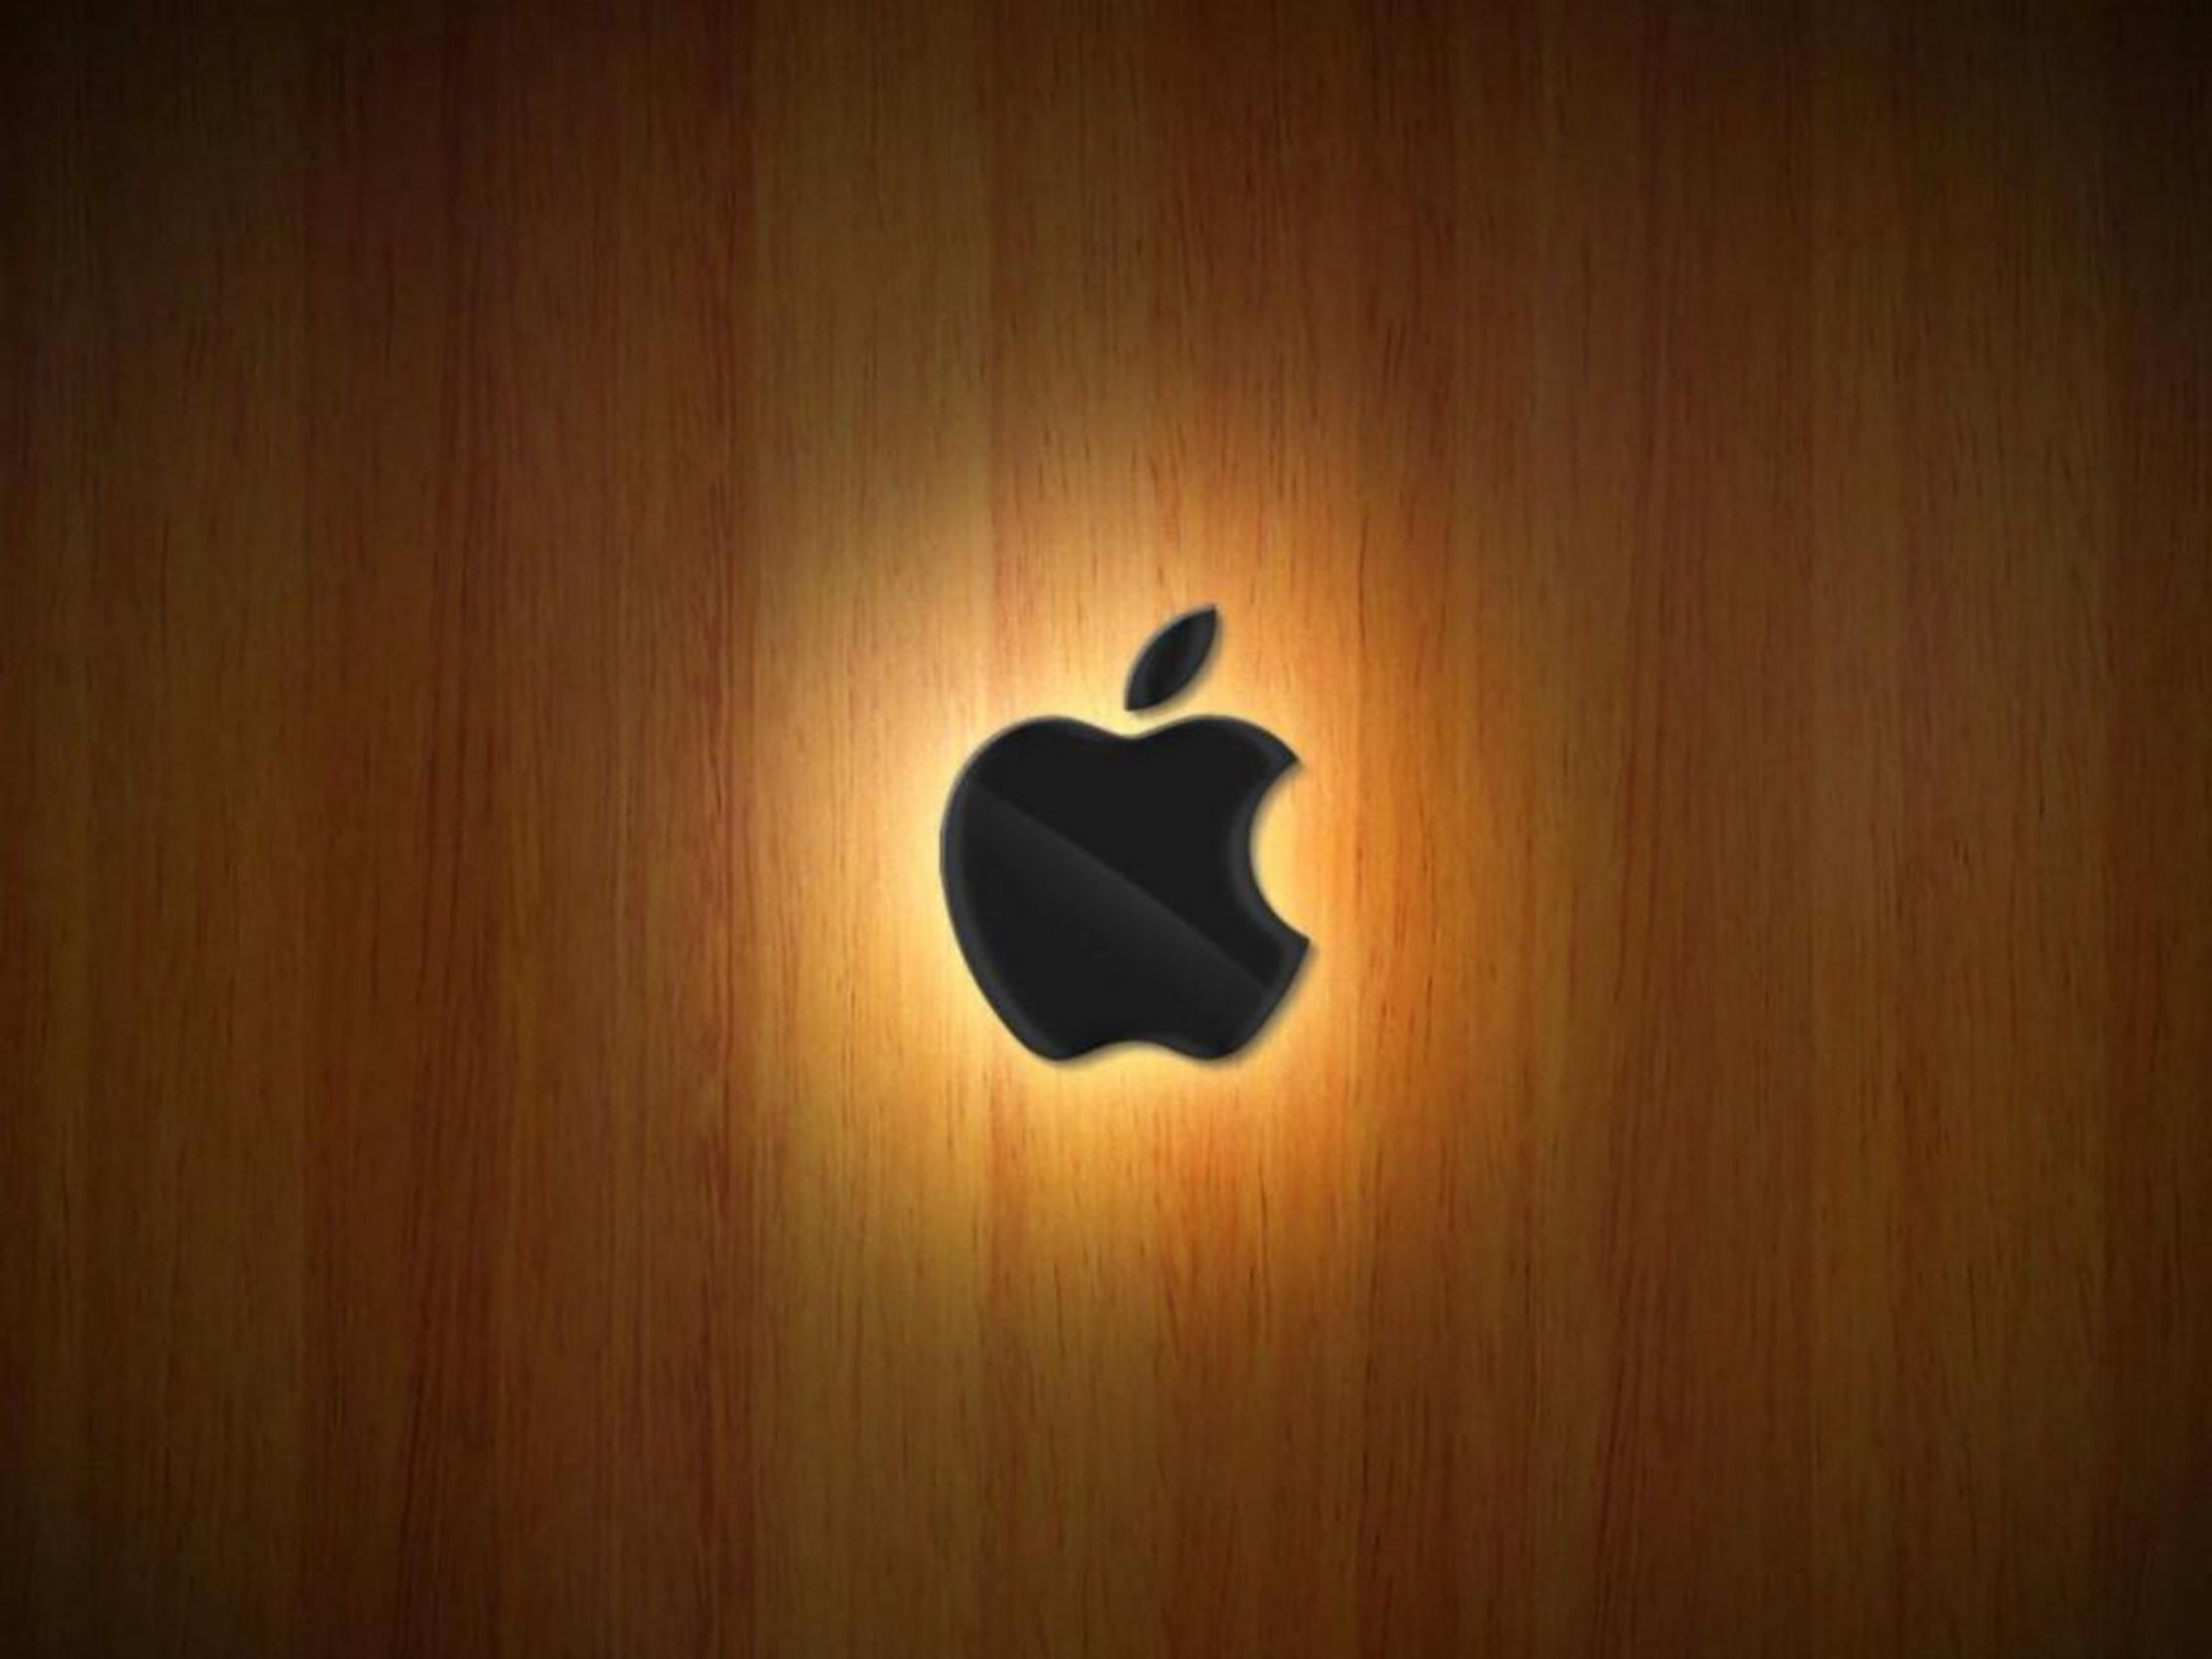 2224x1668 iPad Pro wallpapers Apple Logo Wood Ipad Wallpaper 2224x1668 pixels resolution